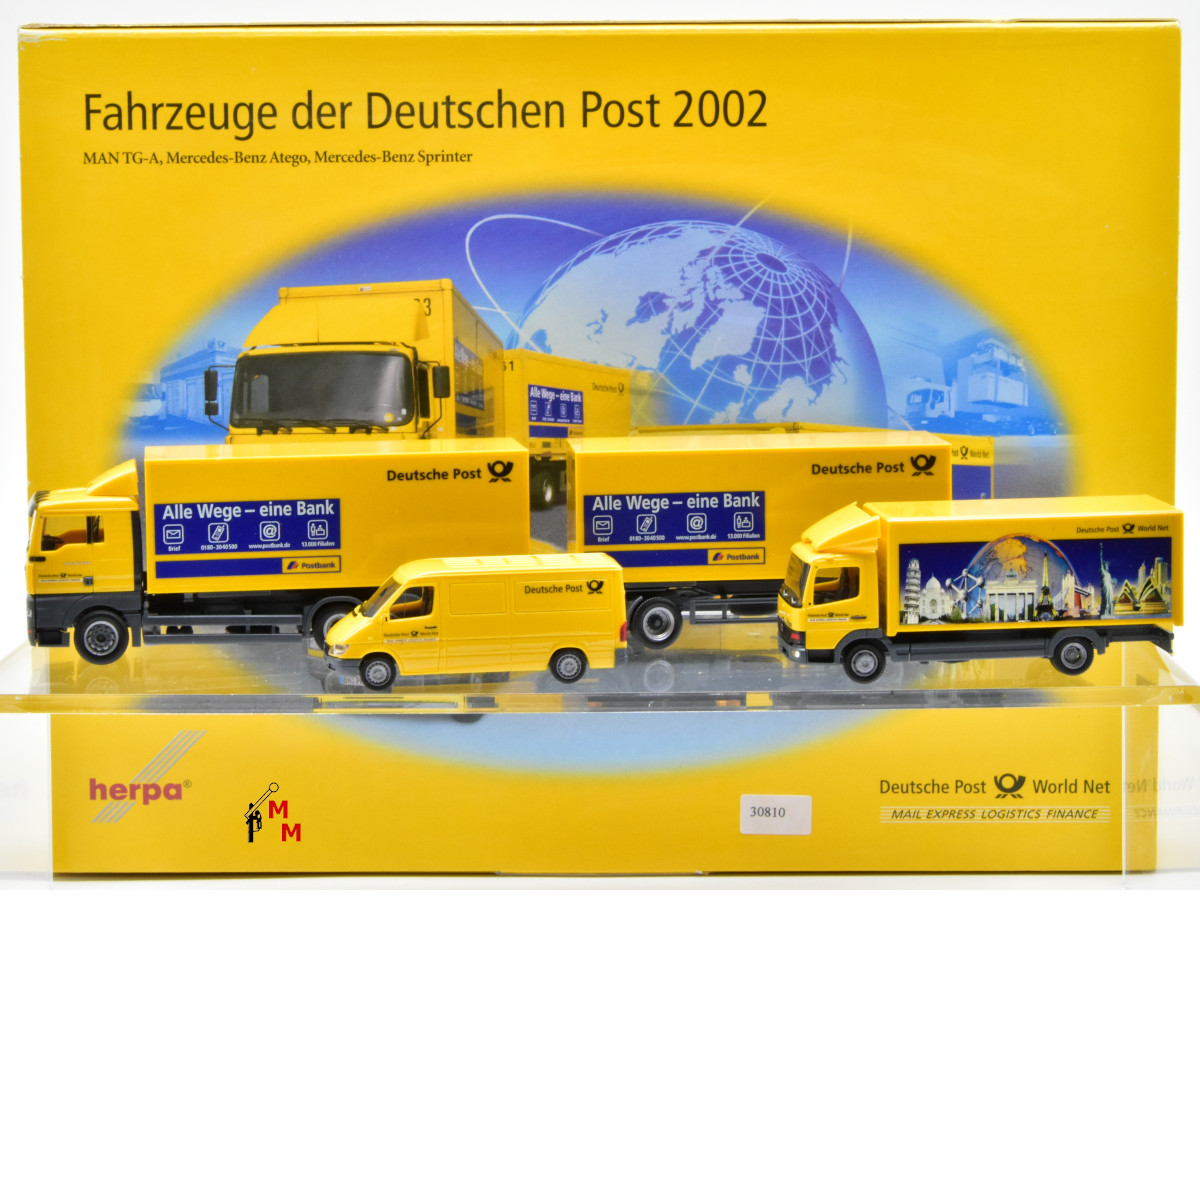 Herpa 006790 Fahrzeug-Set der Deutschen Post 2002, (30810)